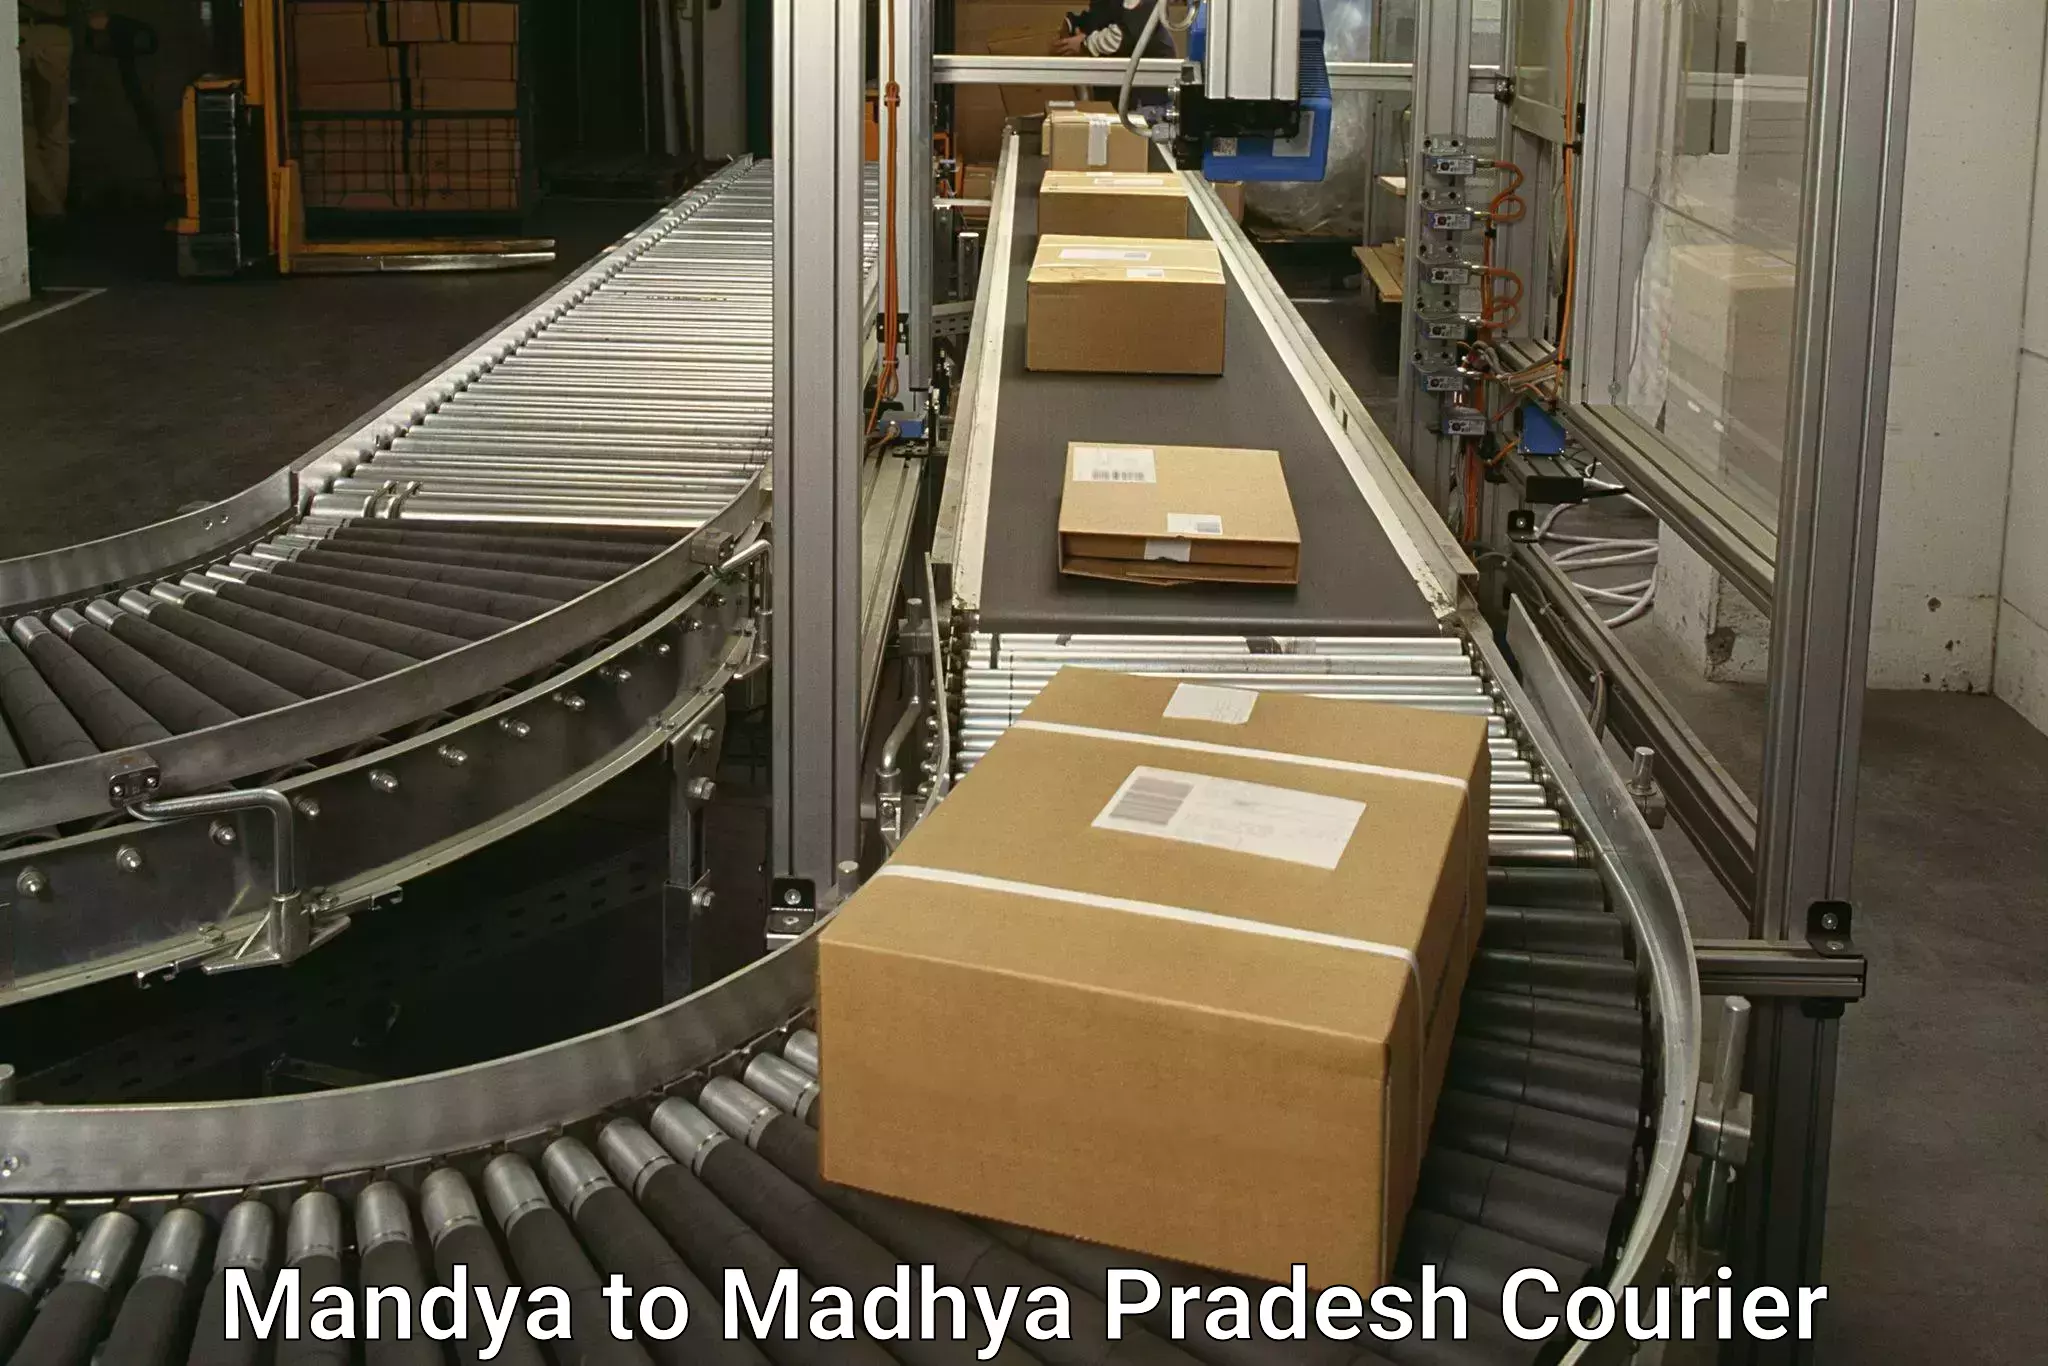 Tech-enabled shipping Mandya to Nagda